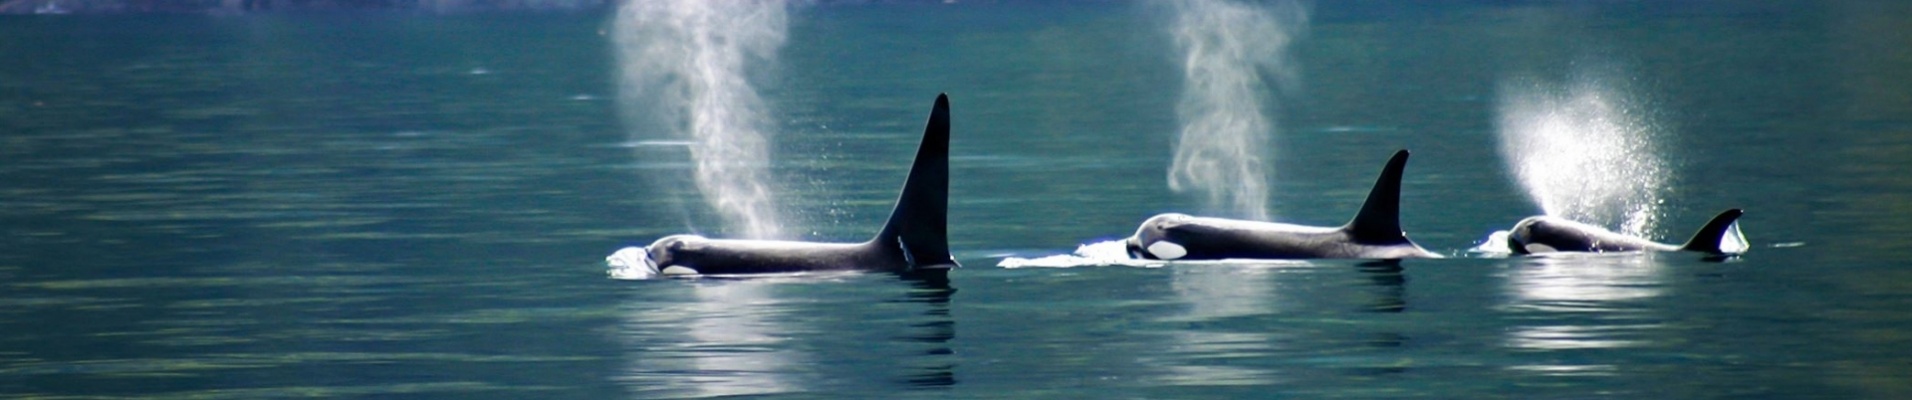 orques-ile-vancouver-canada